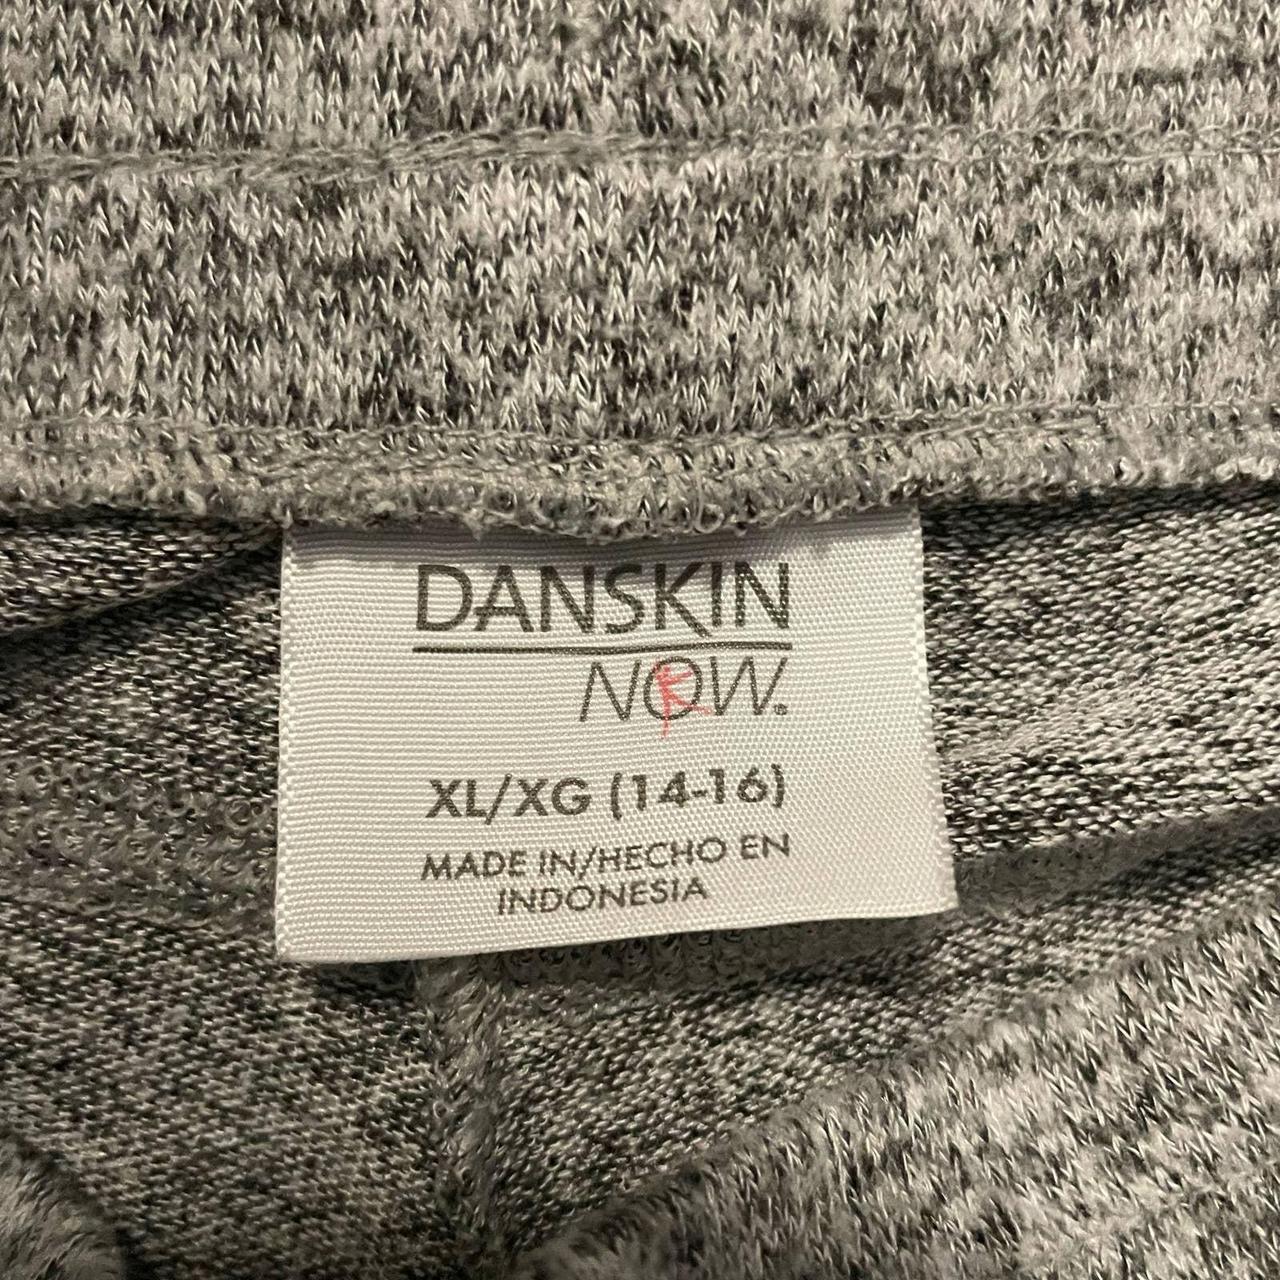 Danskin now gray sweatpants kids size XL SHIPPING + - Depop